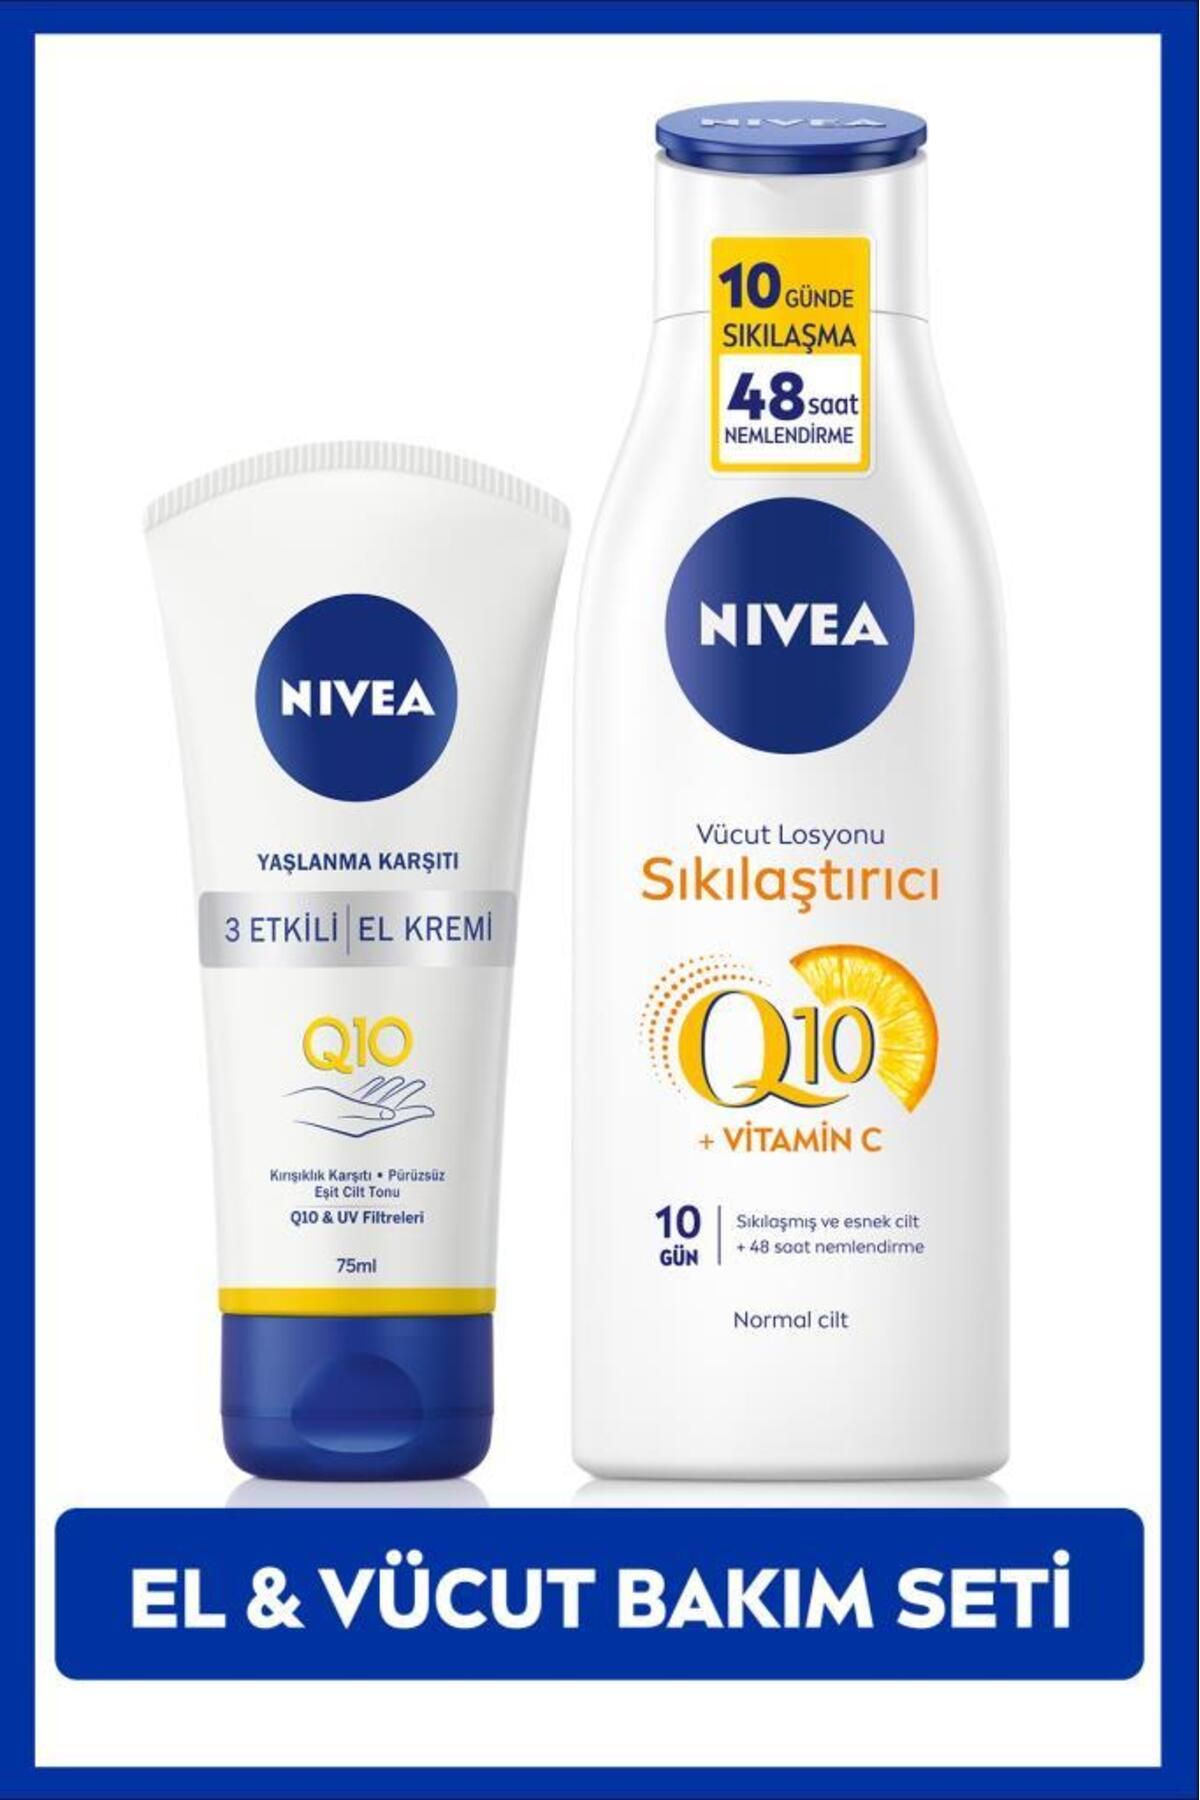 NIVEA Q10 Ve C Vitamini Sıkılaştırıcı Vücut Losyonu 250ml Ve Yaşlanma Karşıtı El Kremi 75ml